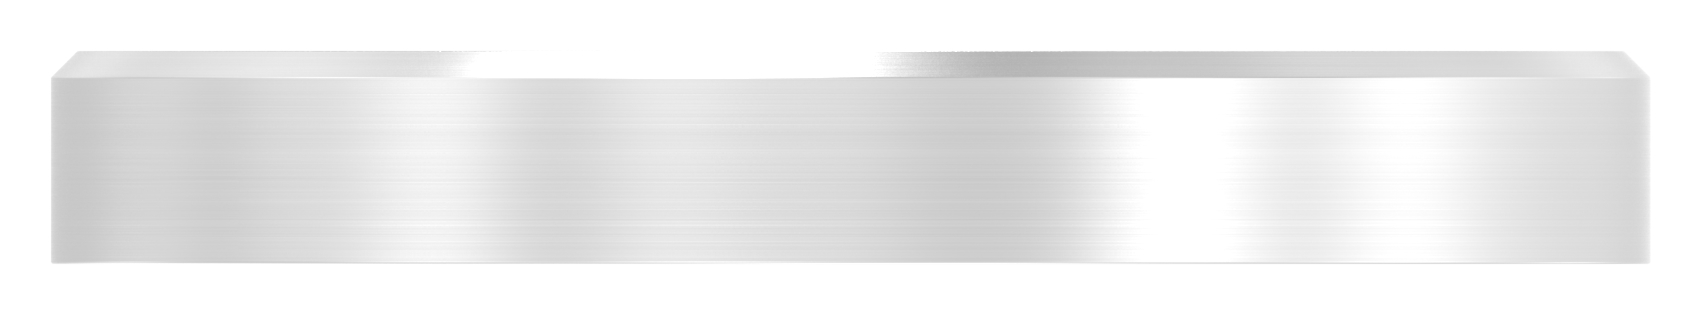 Schraubplatte Ø 60 x 8mm, mittig gesenkt für M12, V2A